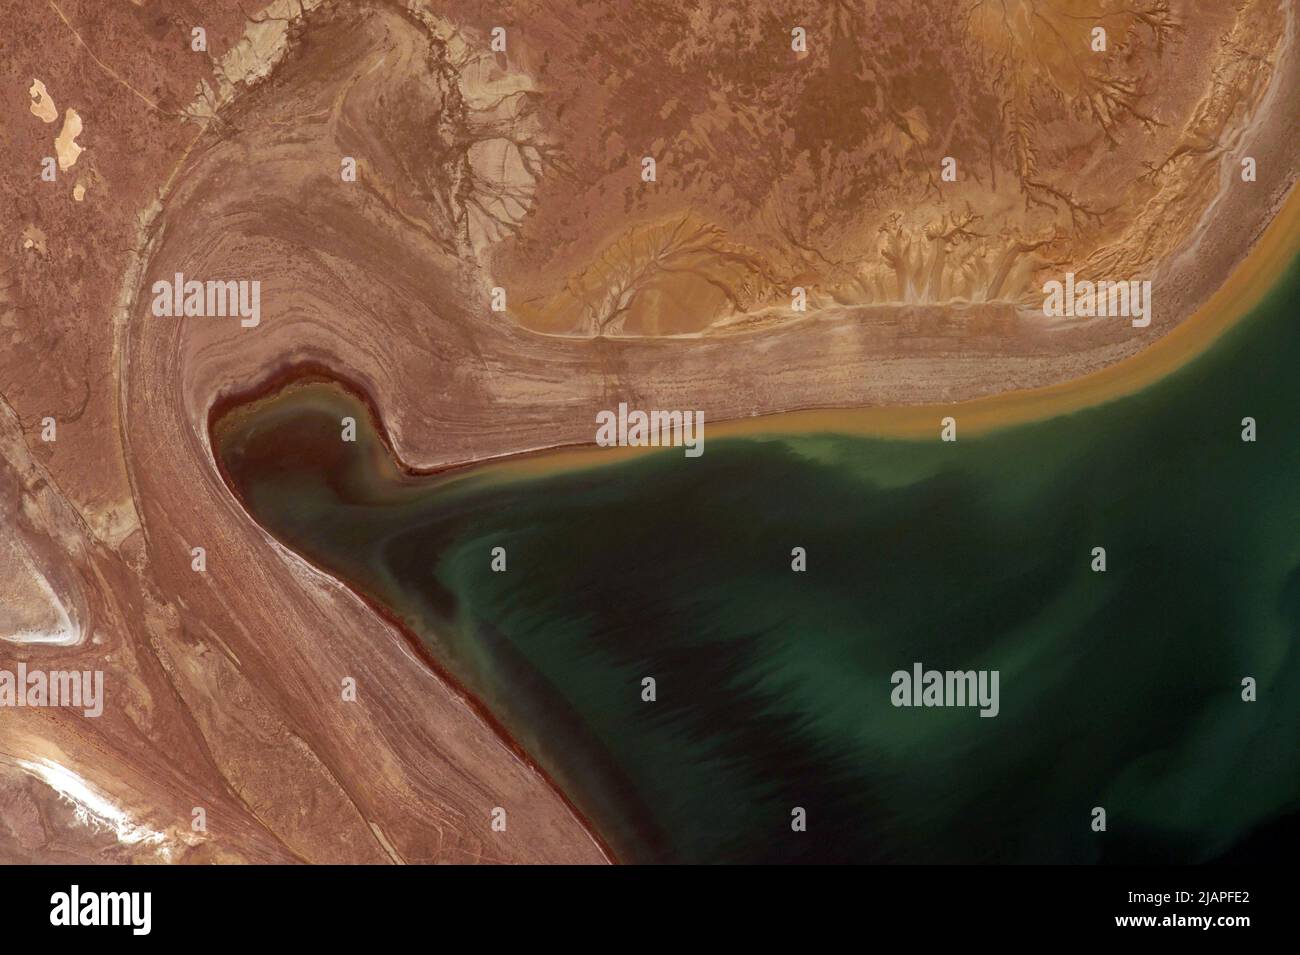 Terra dall'alto: Dettaglio del Mare d'Aral preso dalla Stazione spaziale Internazionale che mostra livelli d'acqua in caduta. Kazakhstan, Asia centrale una versione ottimizzata e potenziata digitalmente di una NASA immagine / credito NASA Foto Stock